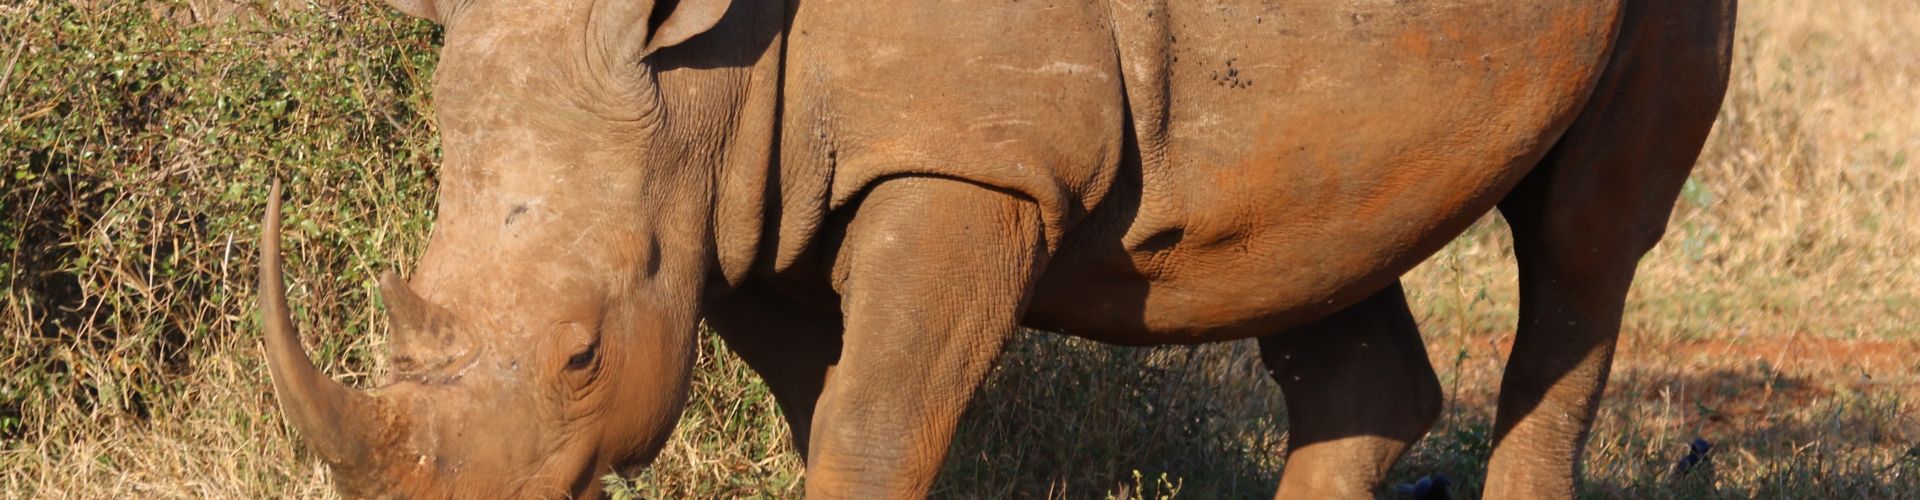 Portrait en gros plan d'un rhinocéros, l'une des espèces les plus menacées au monde.